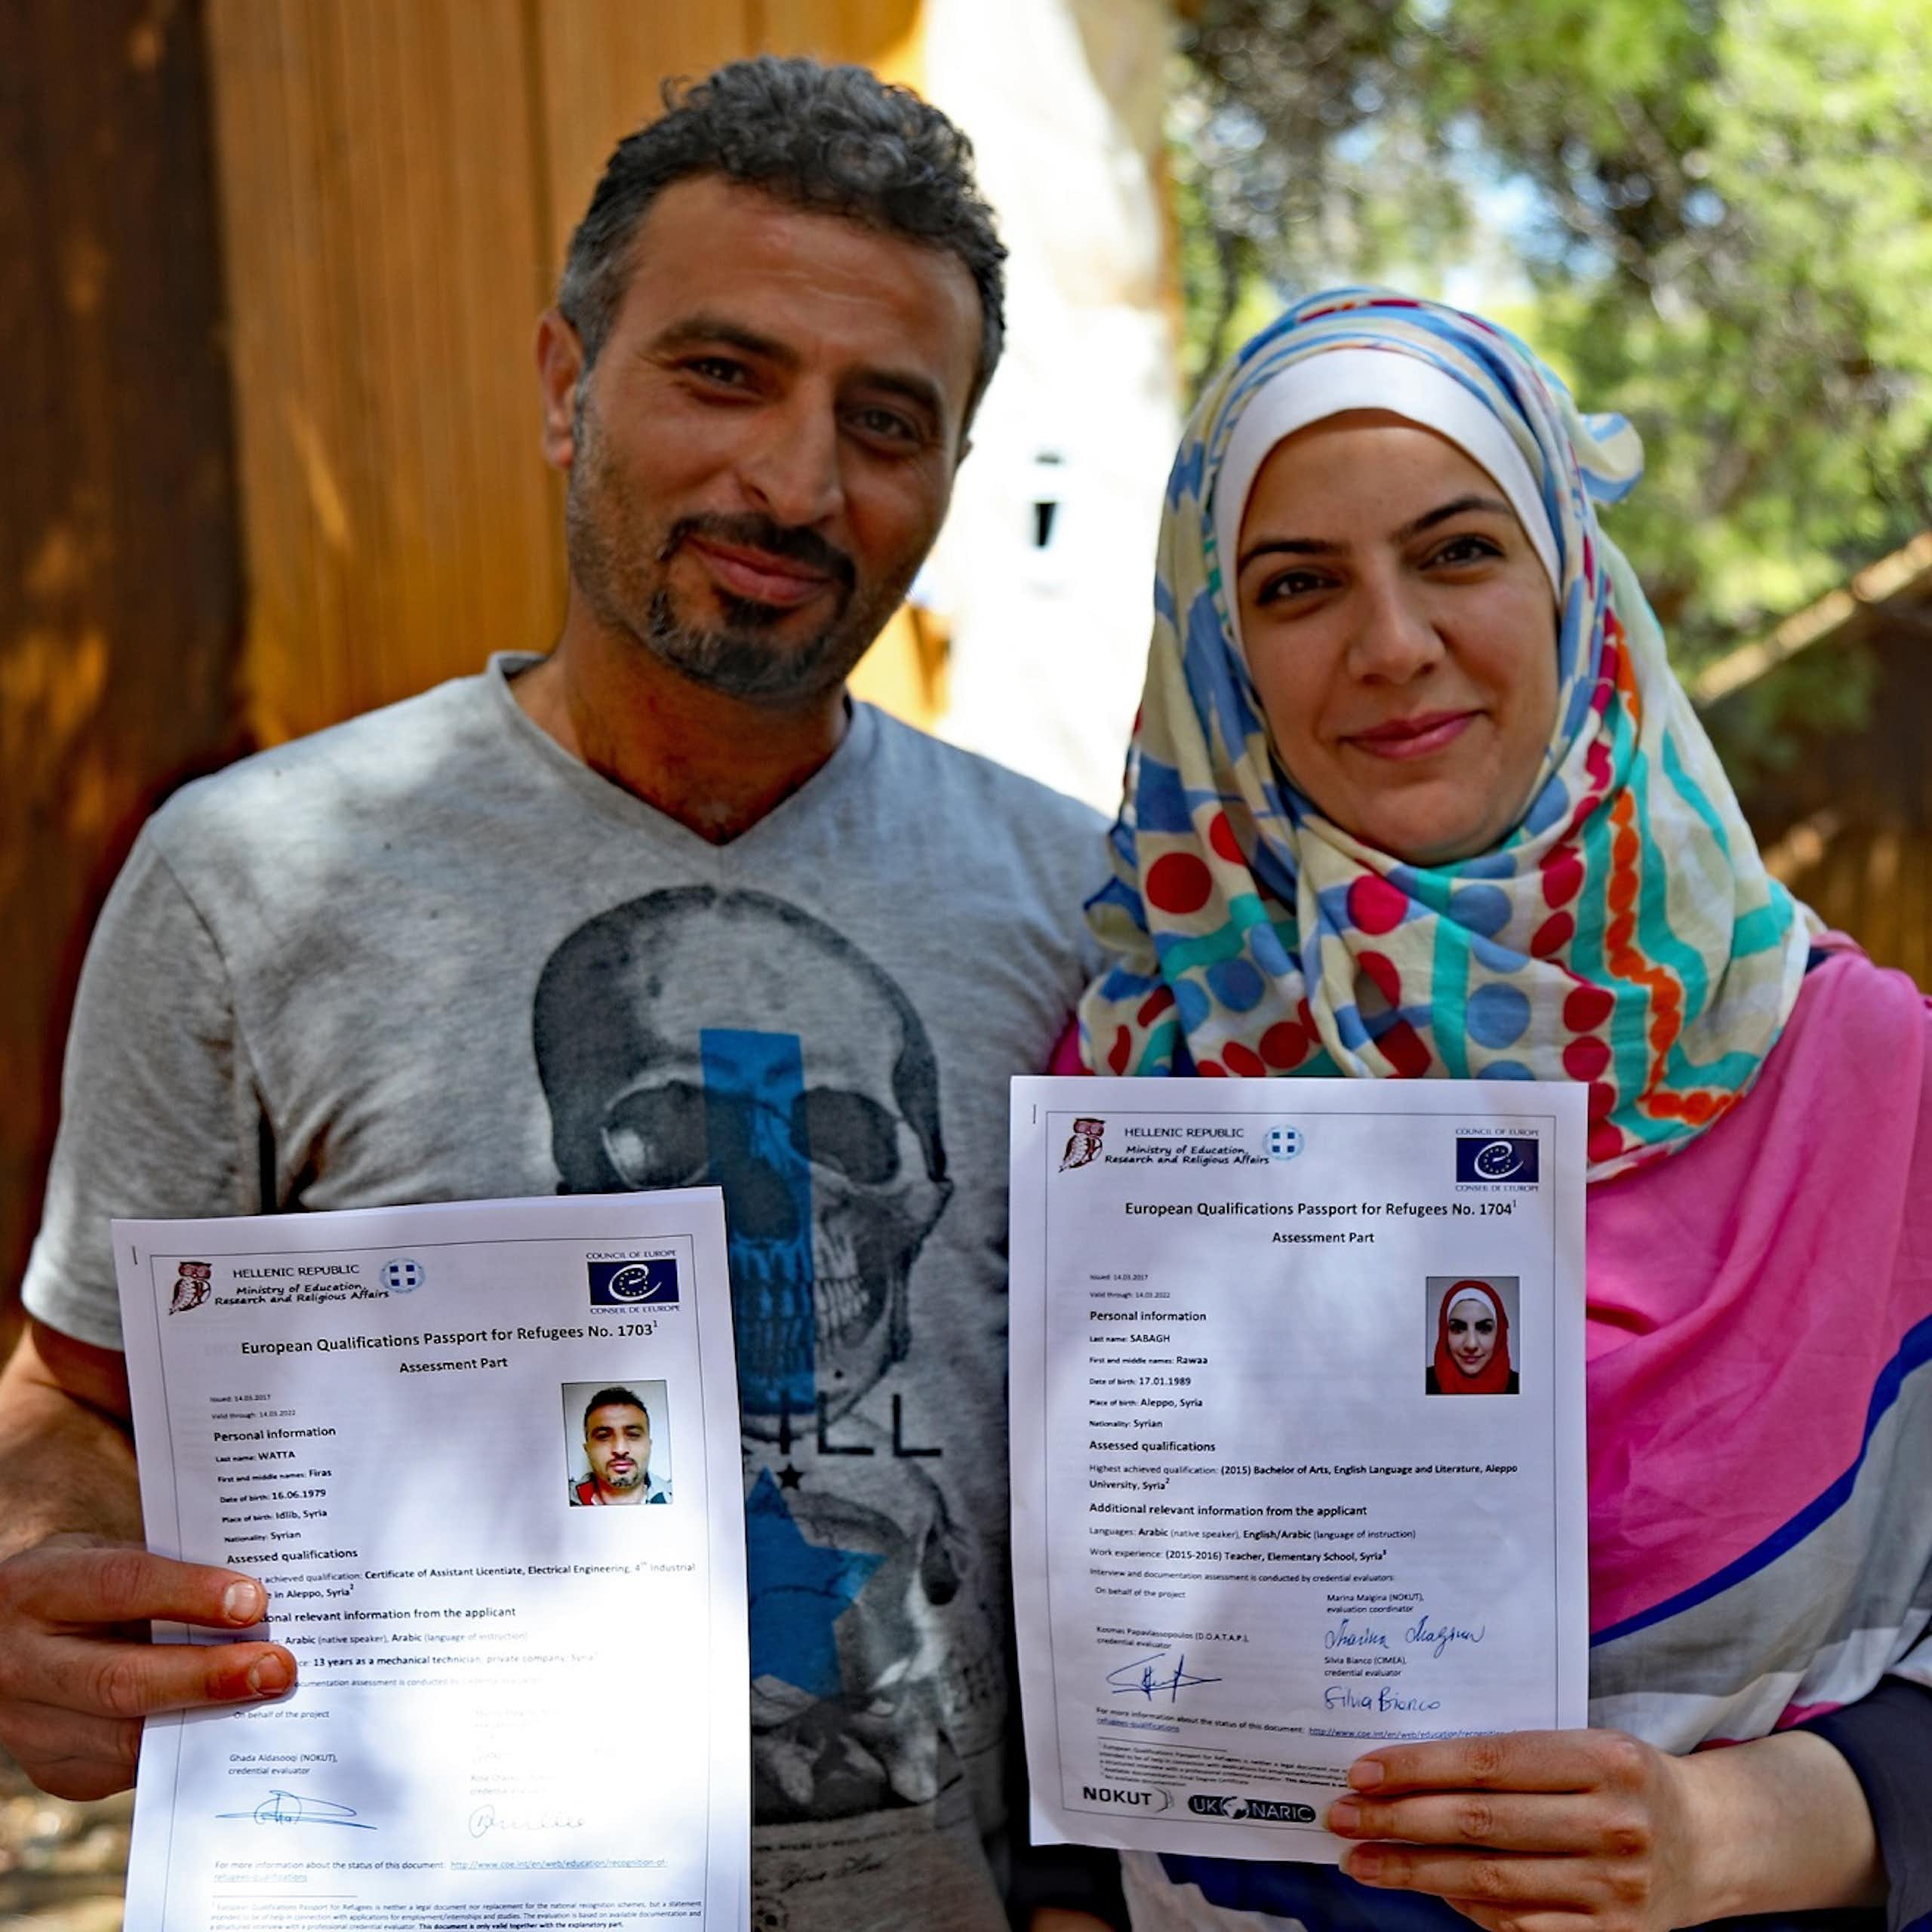 Deux réfugiés montrent leurs passeports européens des qualifications pour les réfugiés.